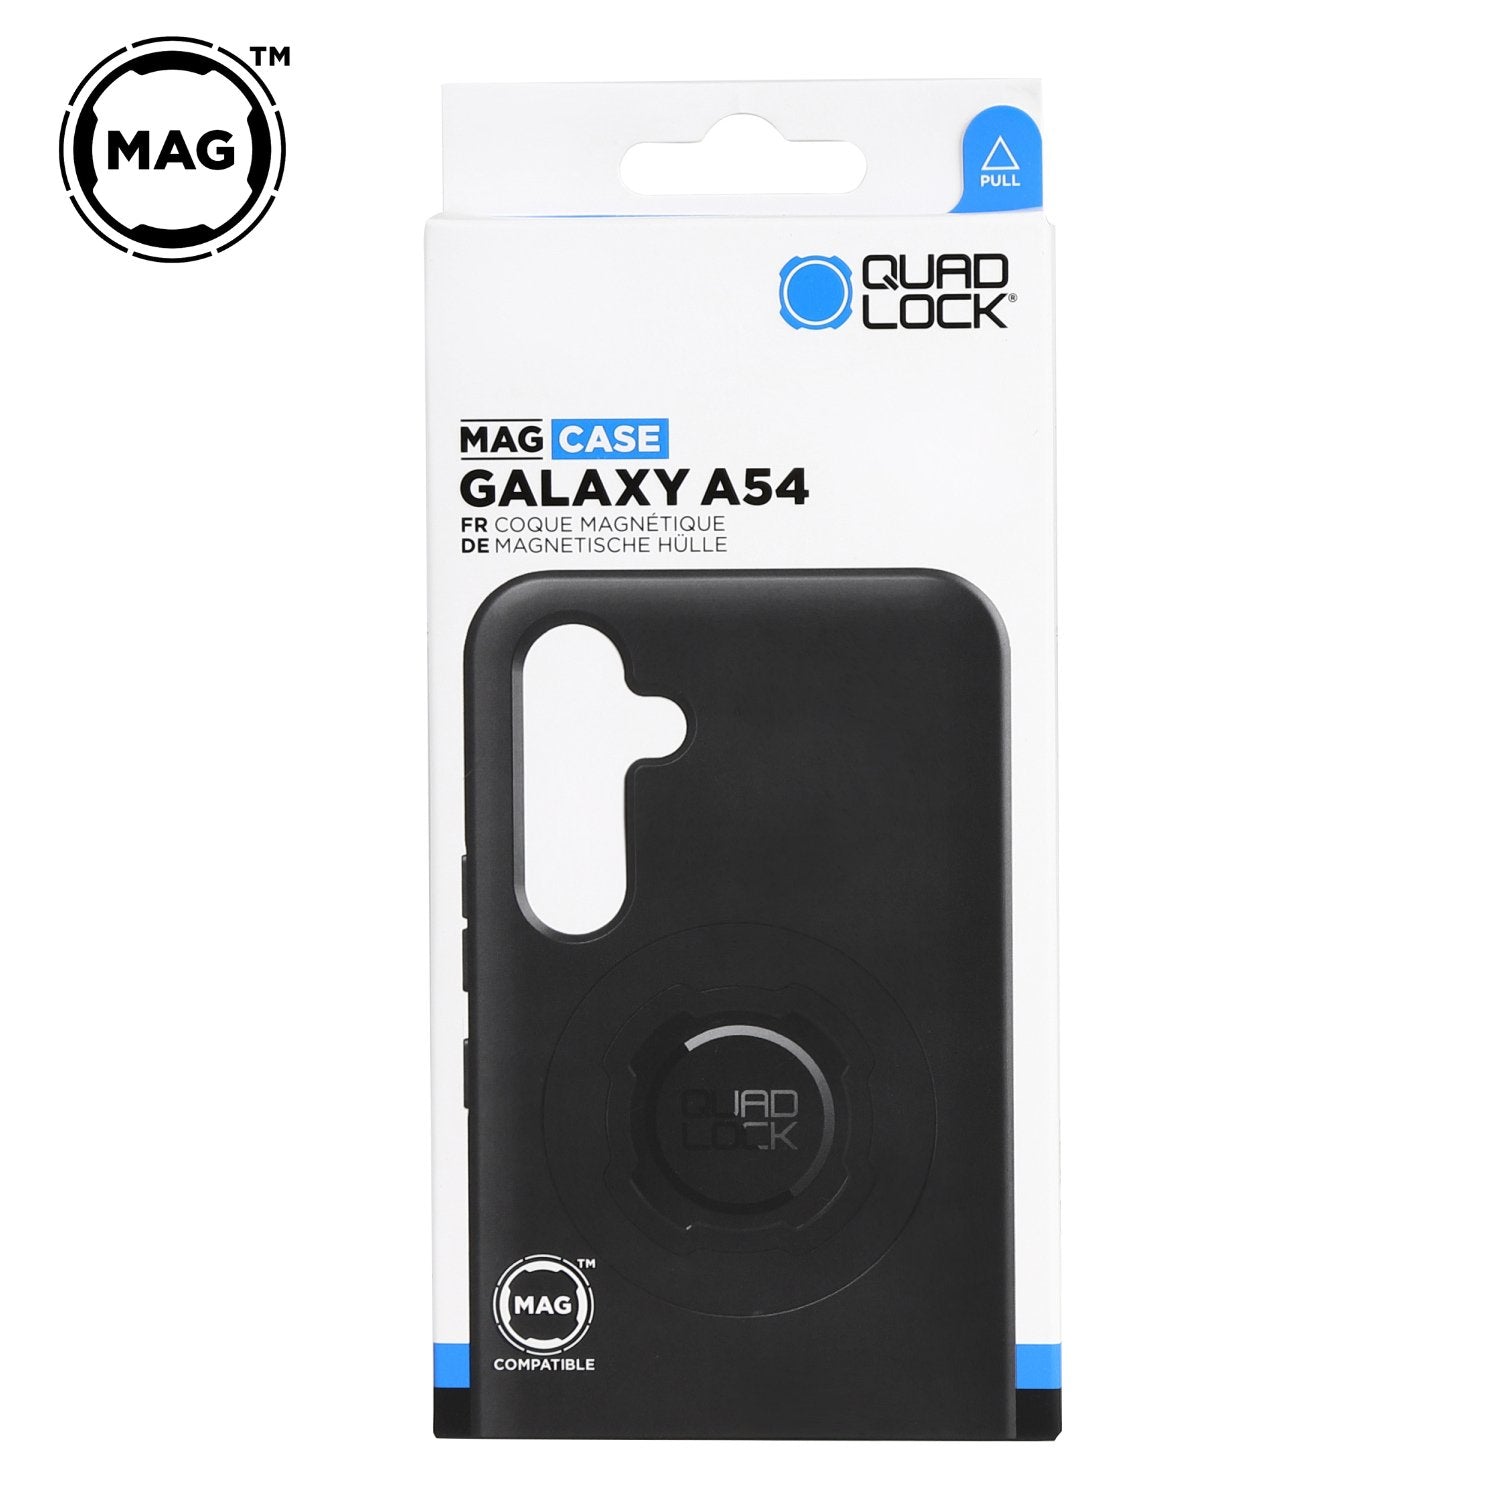 Galaxy A54 | スマホケース MAG対応 - Quad Lock